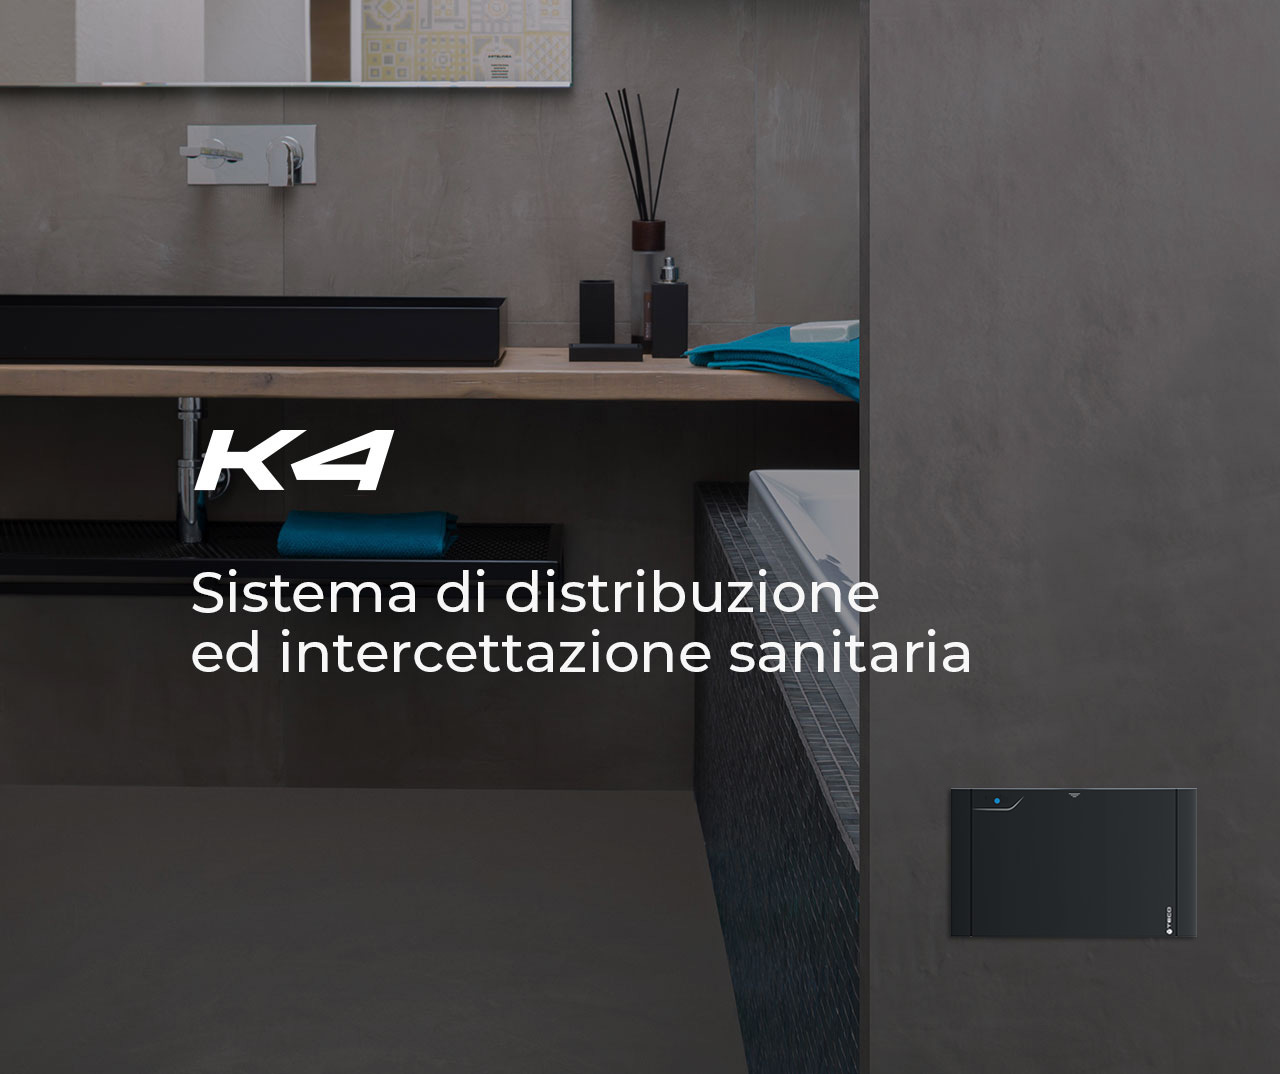 K4 Sistema di distribuzione ed intercettazione acqua per impianti sanitari